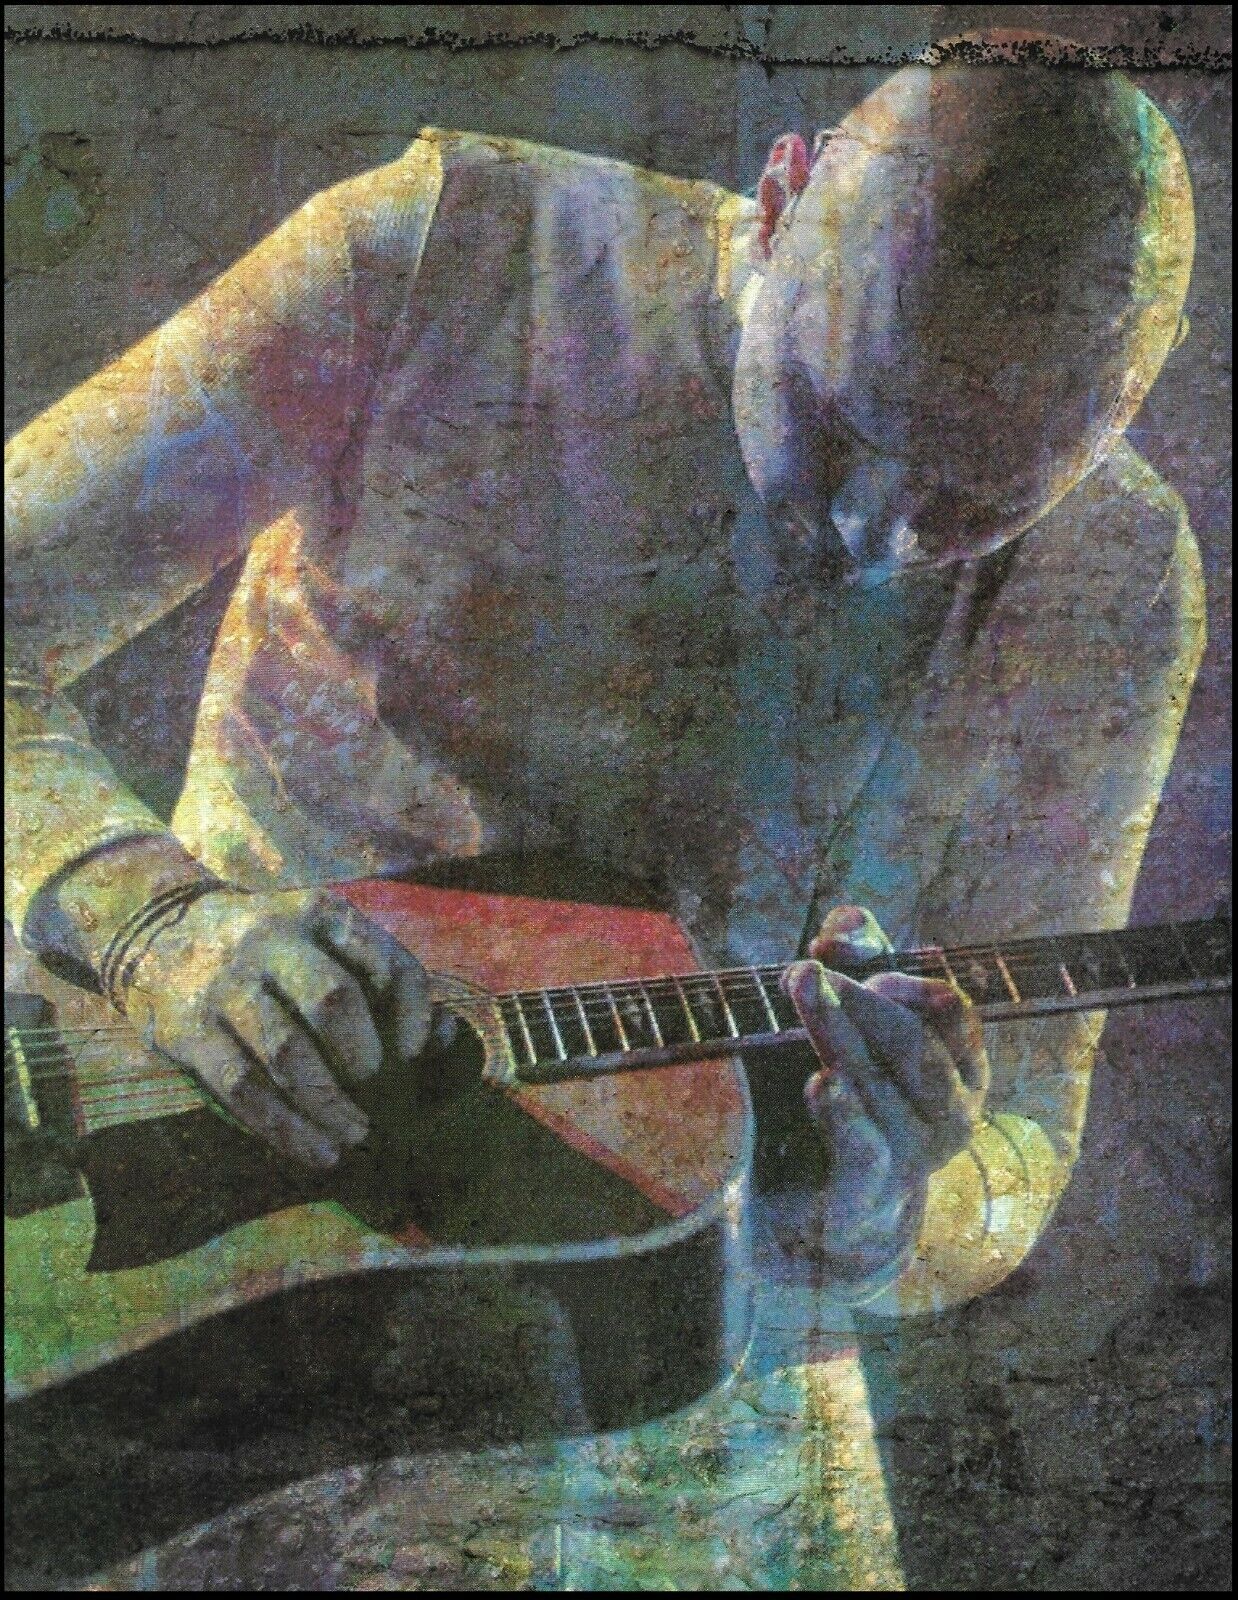 Smashing Pumpkins Billy Corgan Yamaha acoustic guitar 8.5 x 11  pin-up photo